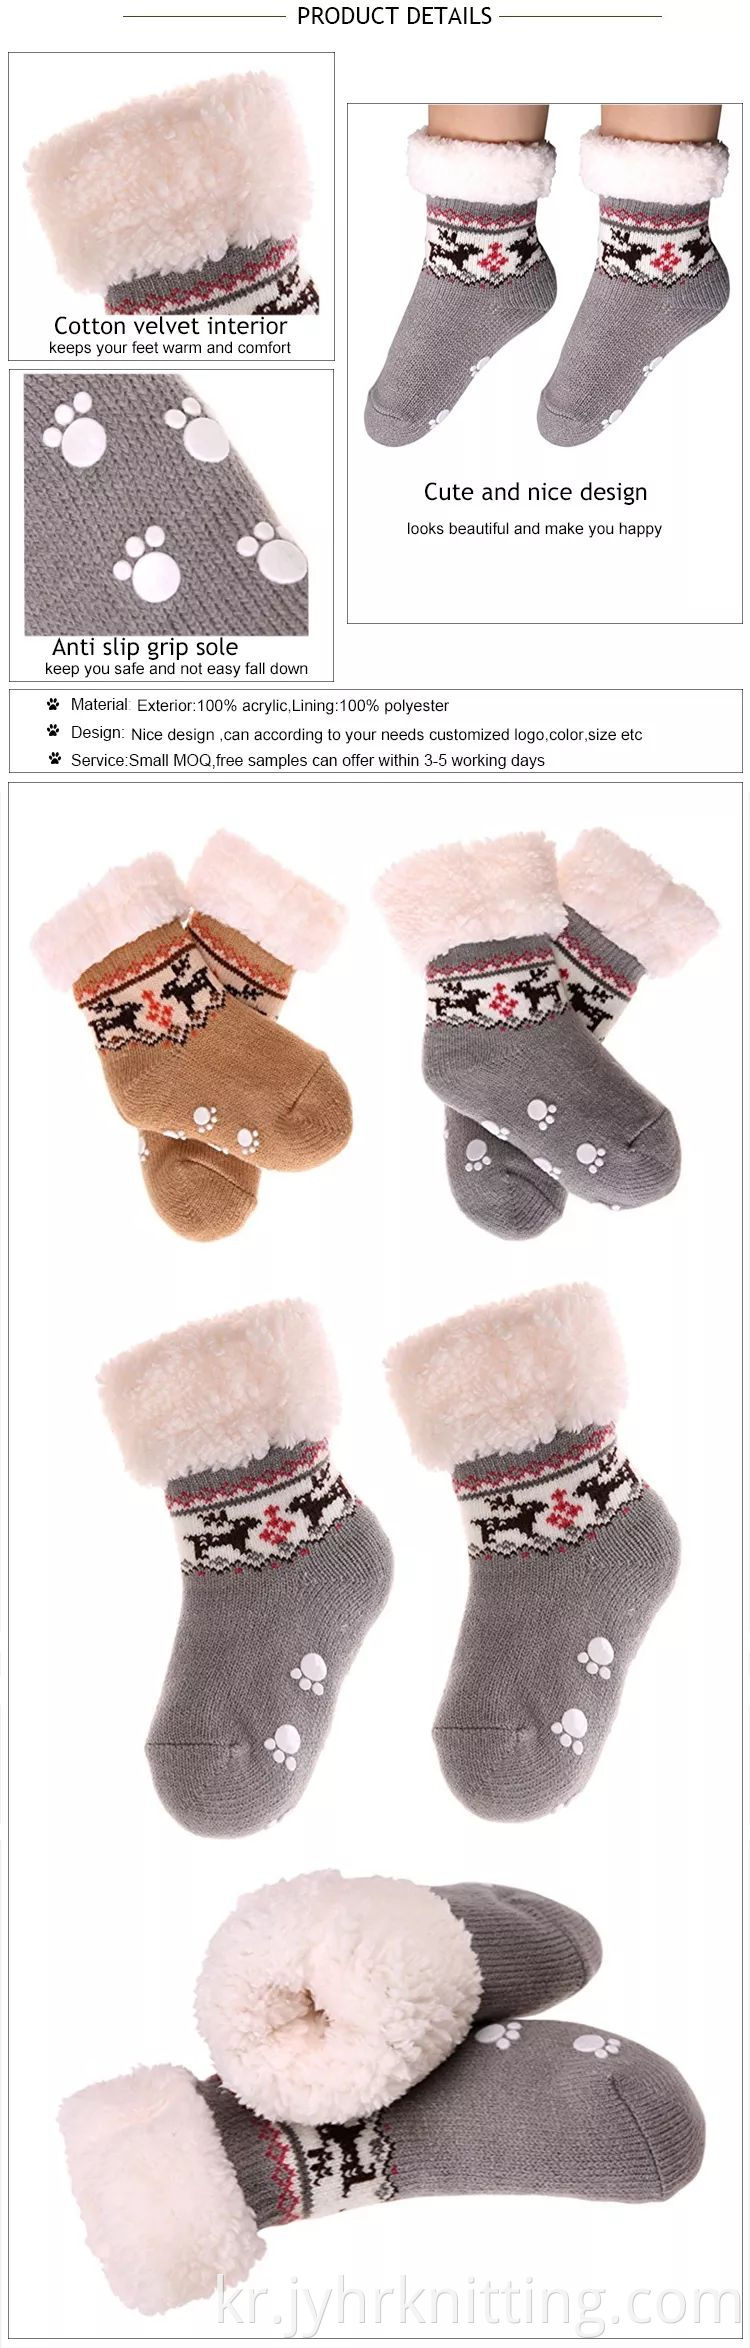 Kids Cute Fuzzy Socks